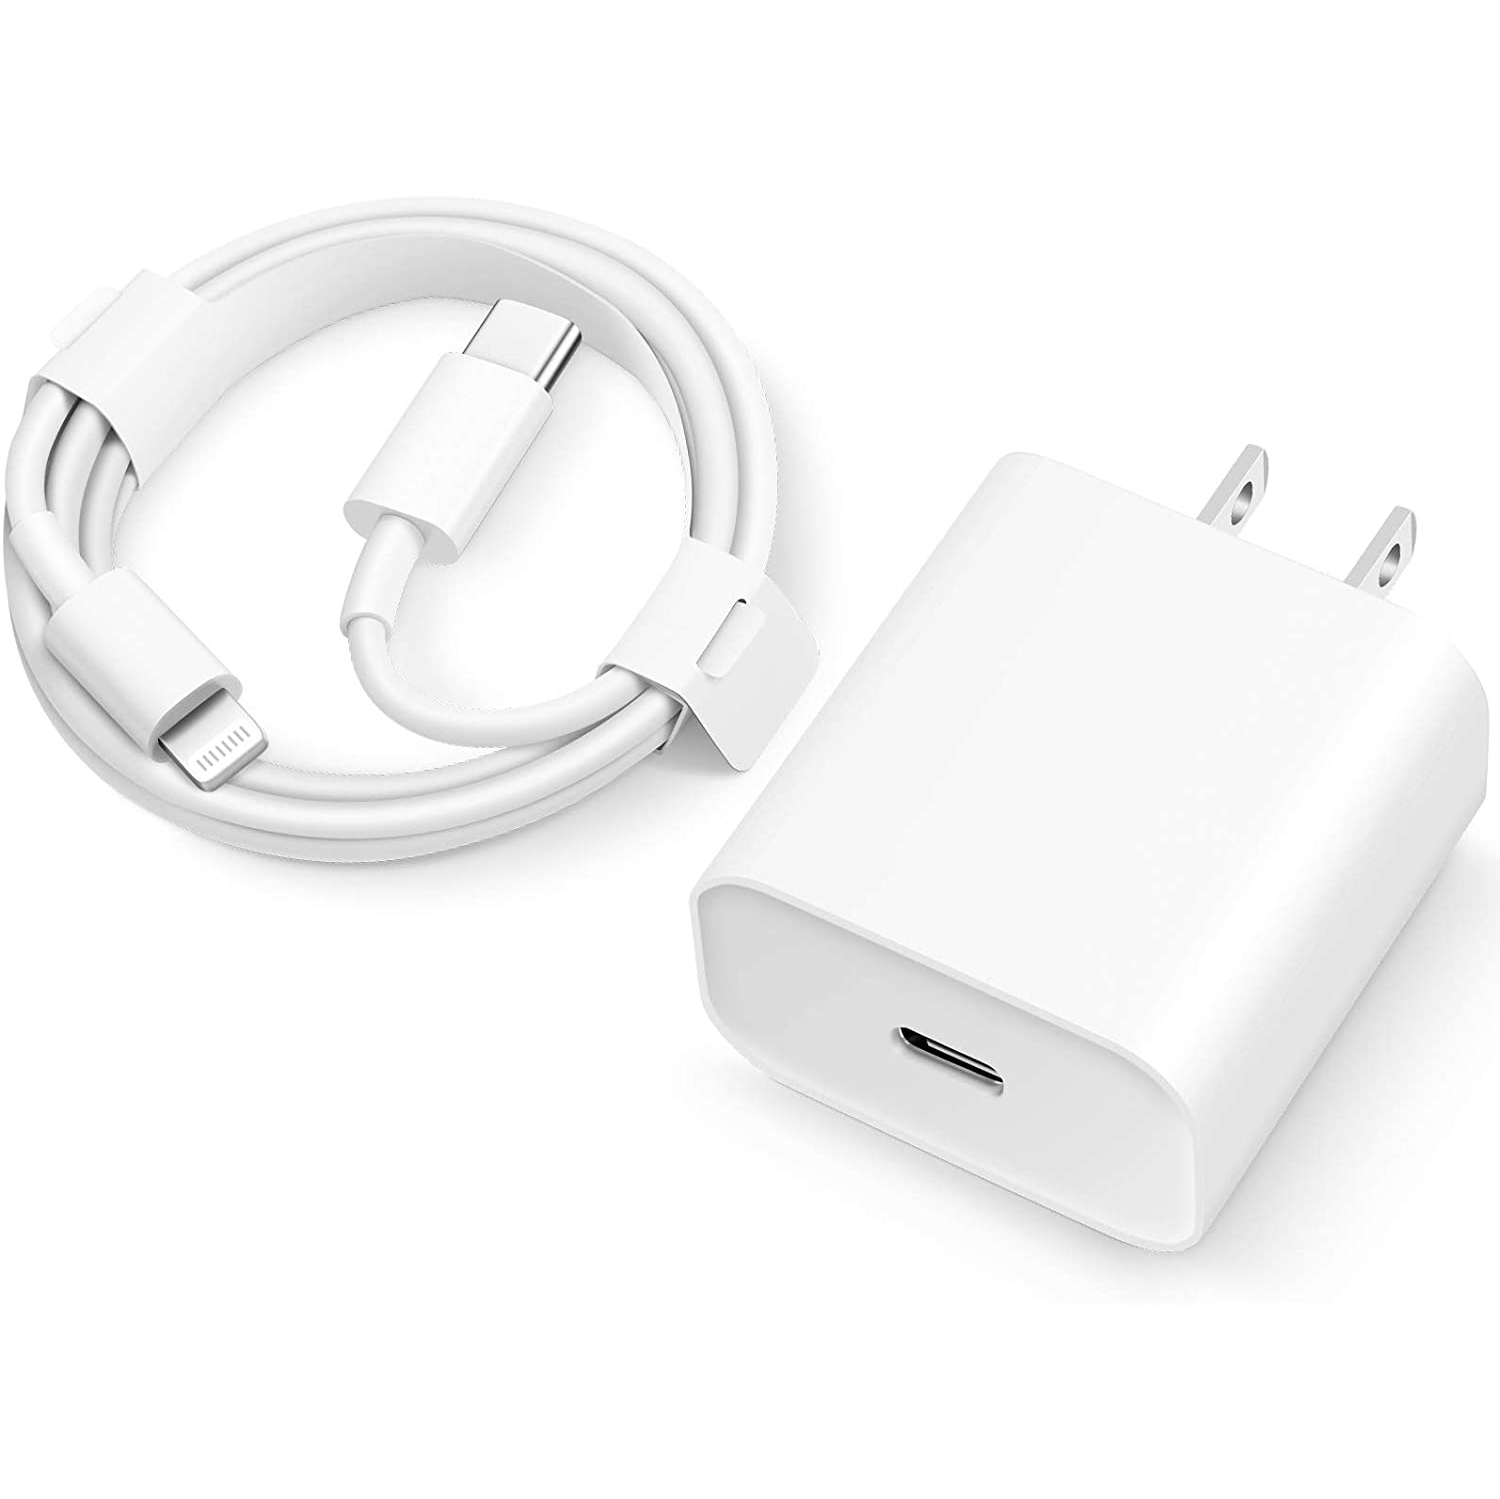 Chargeur pour Apple 20W (Générique) chargeur rapide pour iPhone 7